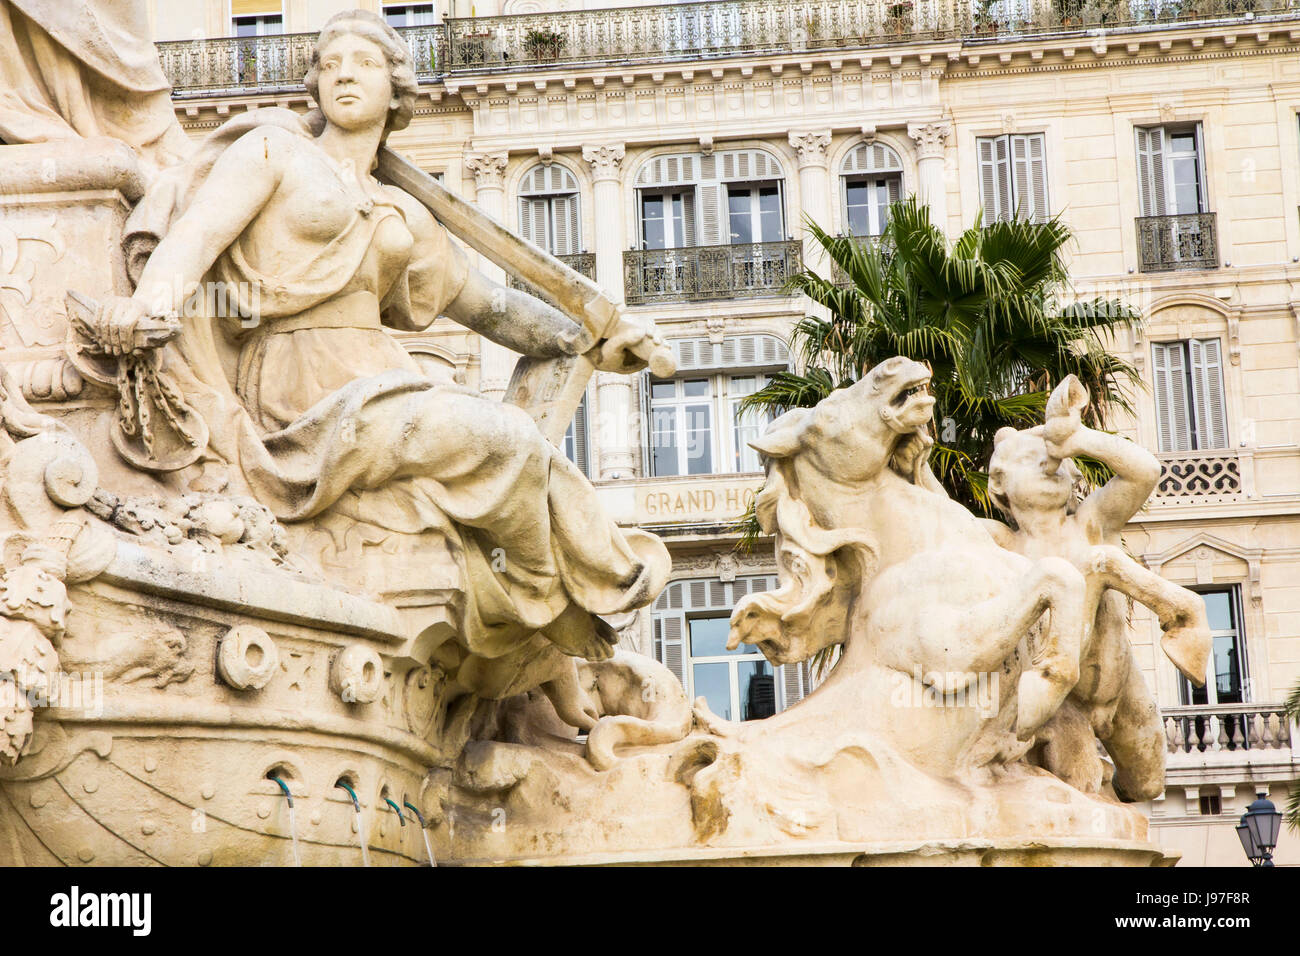 Figuras mitológicas de arenisca en una fuente en cascada, el centro de la ciudad de Toulon, Francia, Europa. Foto de stock